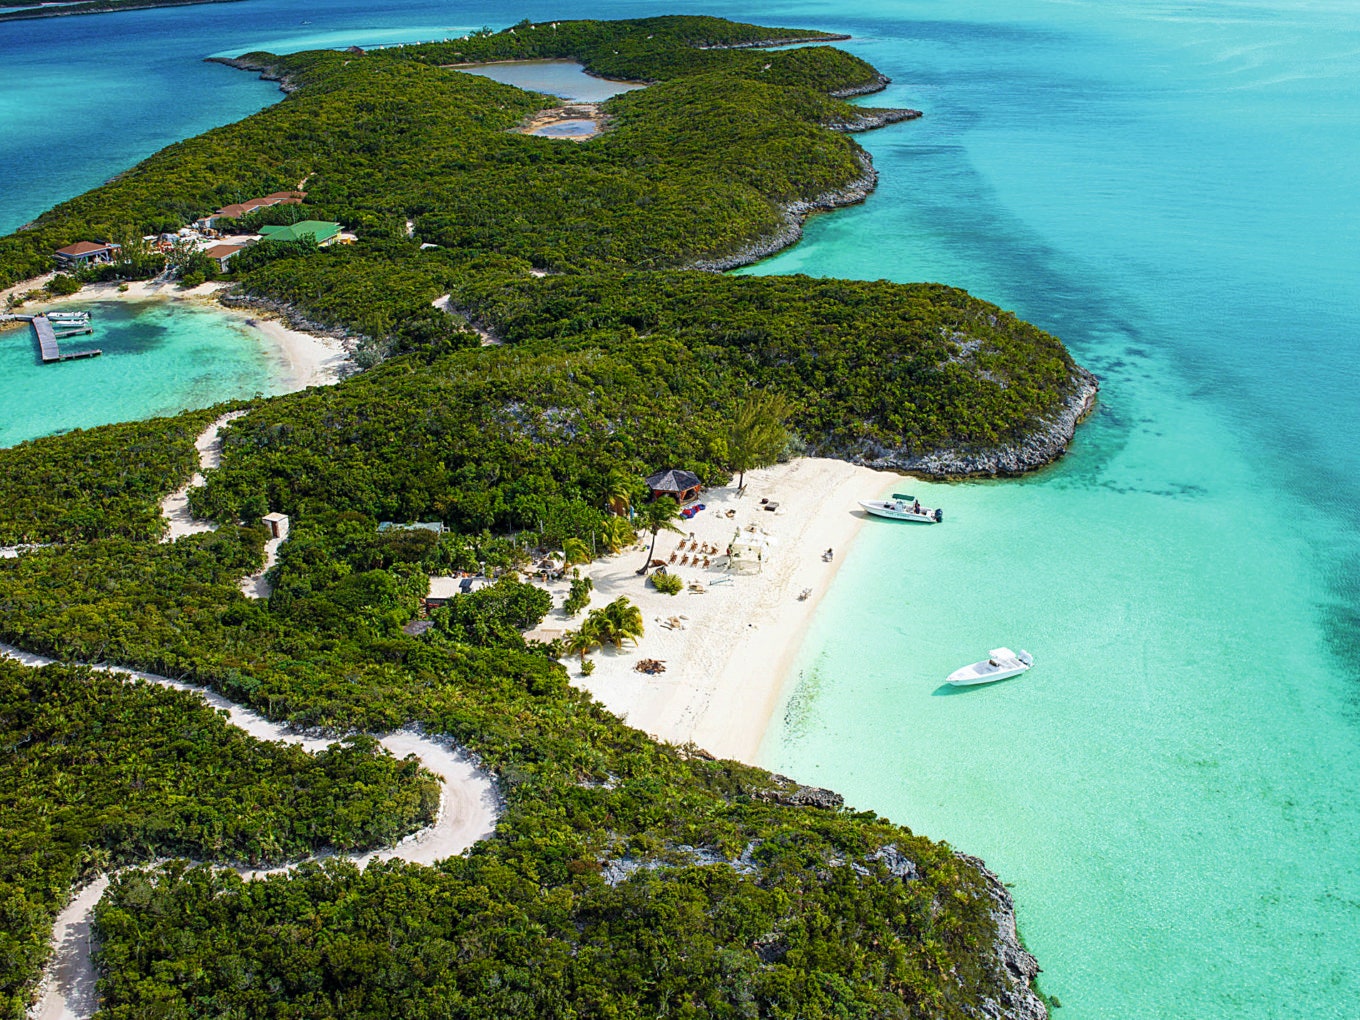 Острова ЛиттлХоллсПондКей на Багамах  собственность Джонни Деппа.